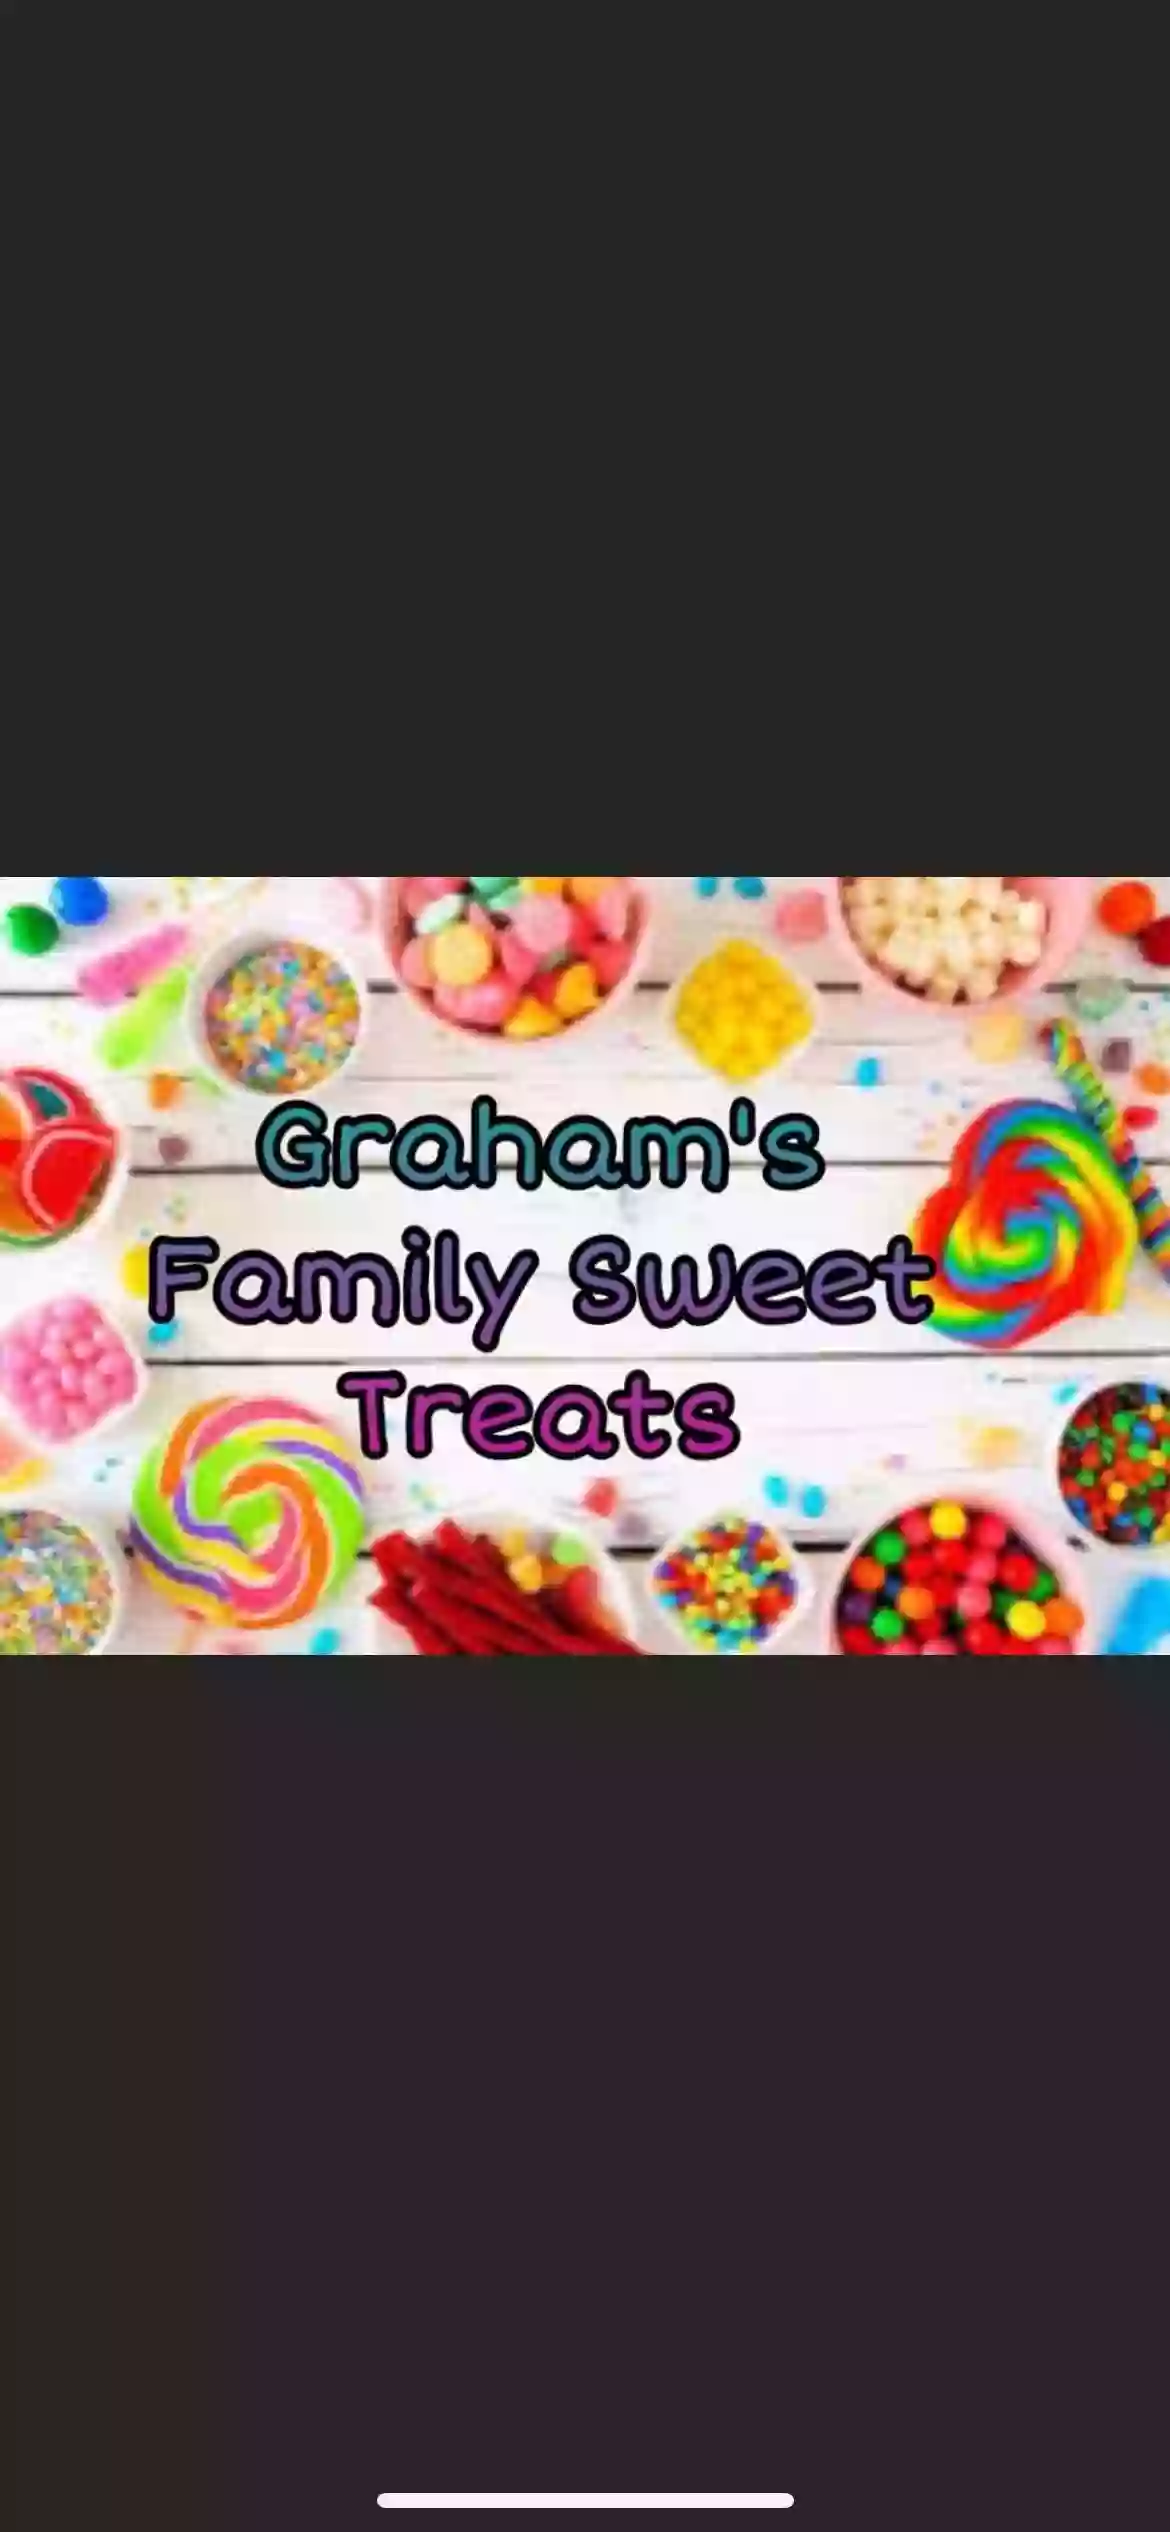 Graham’s Family Sweet Treats